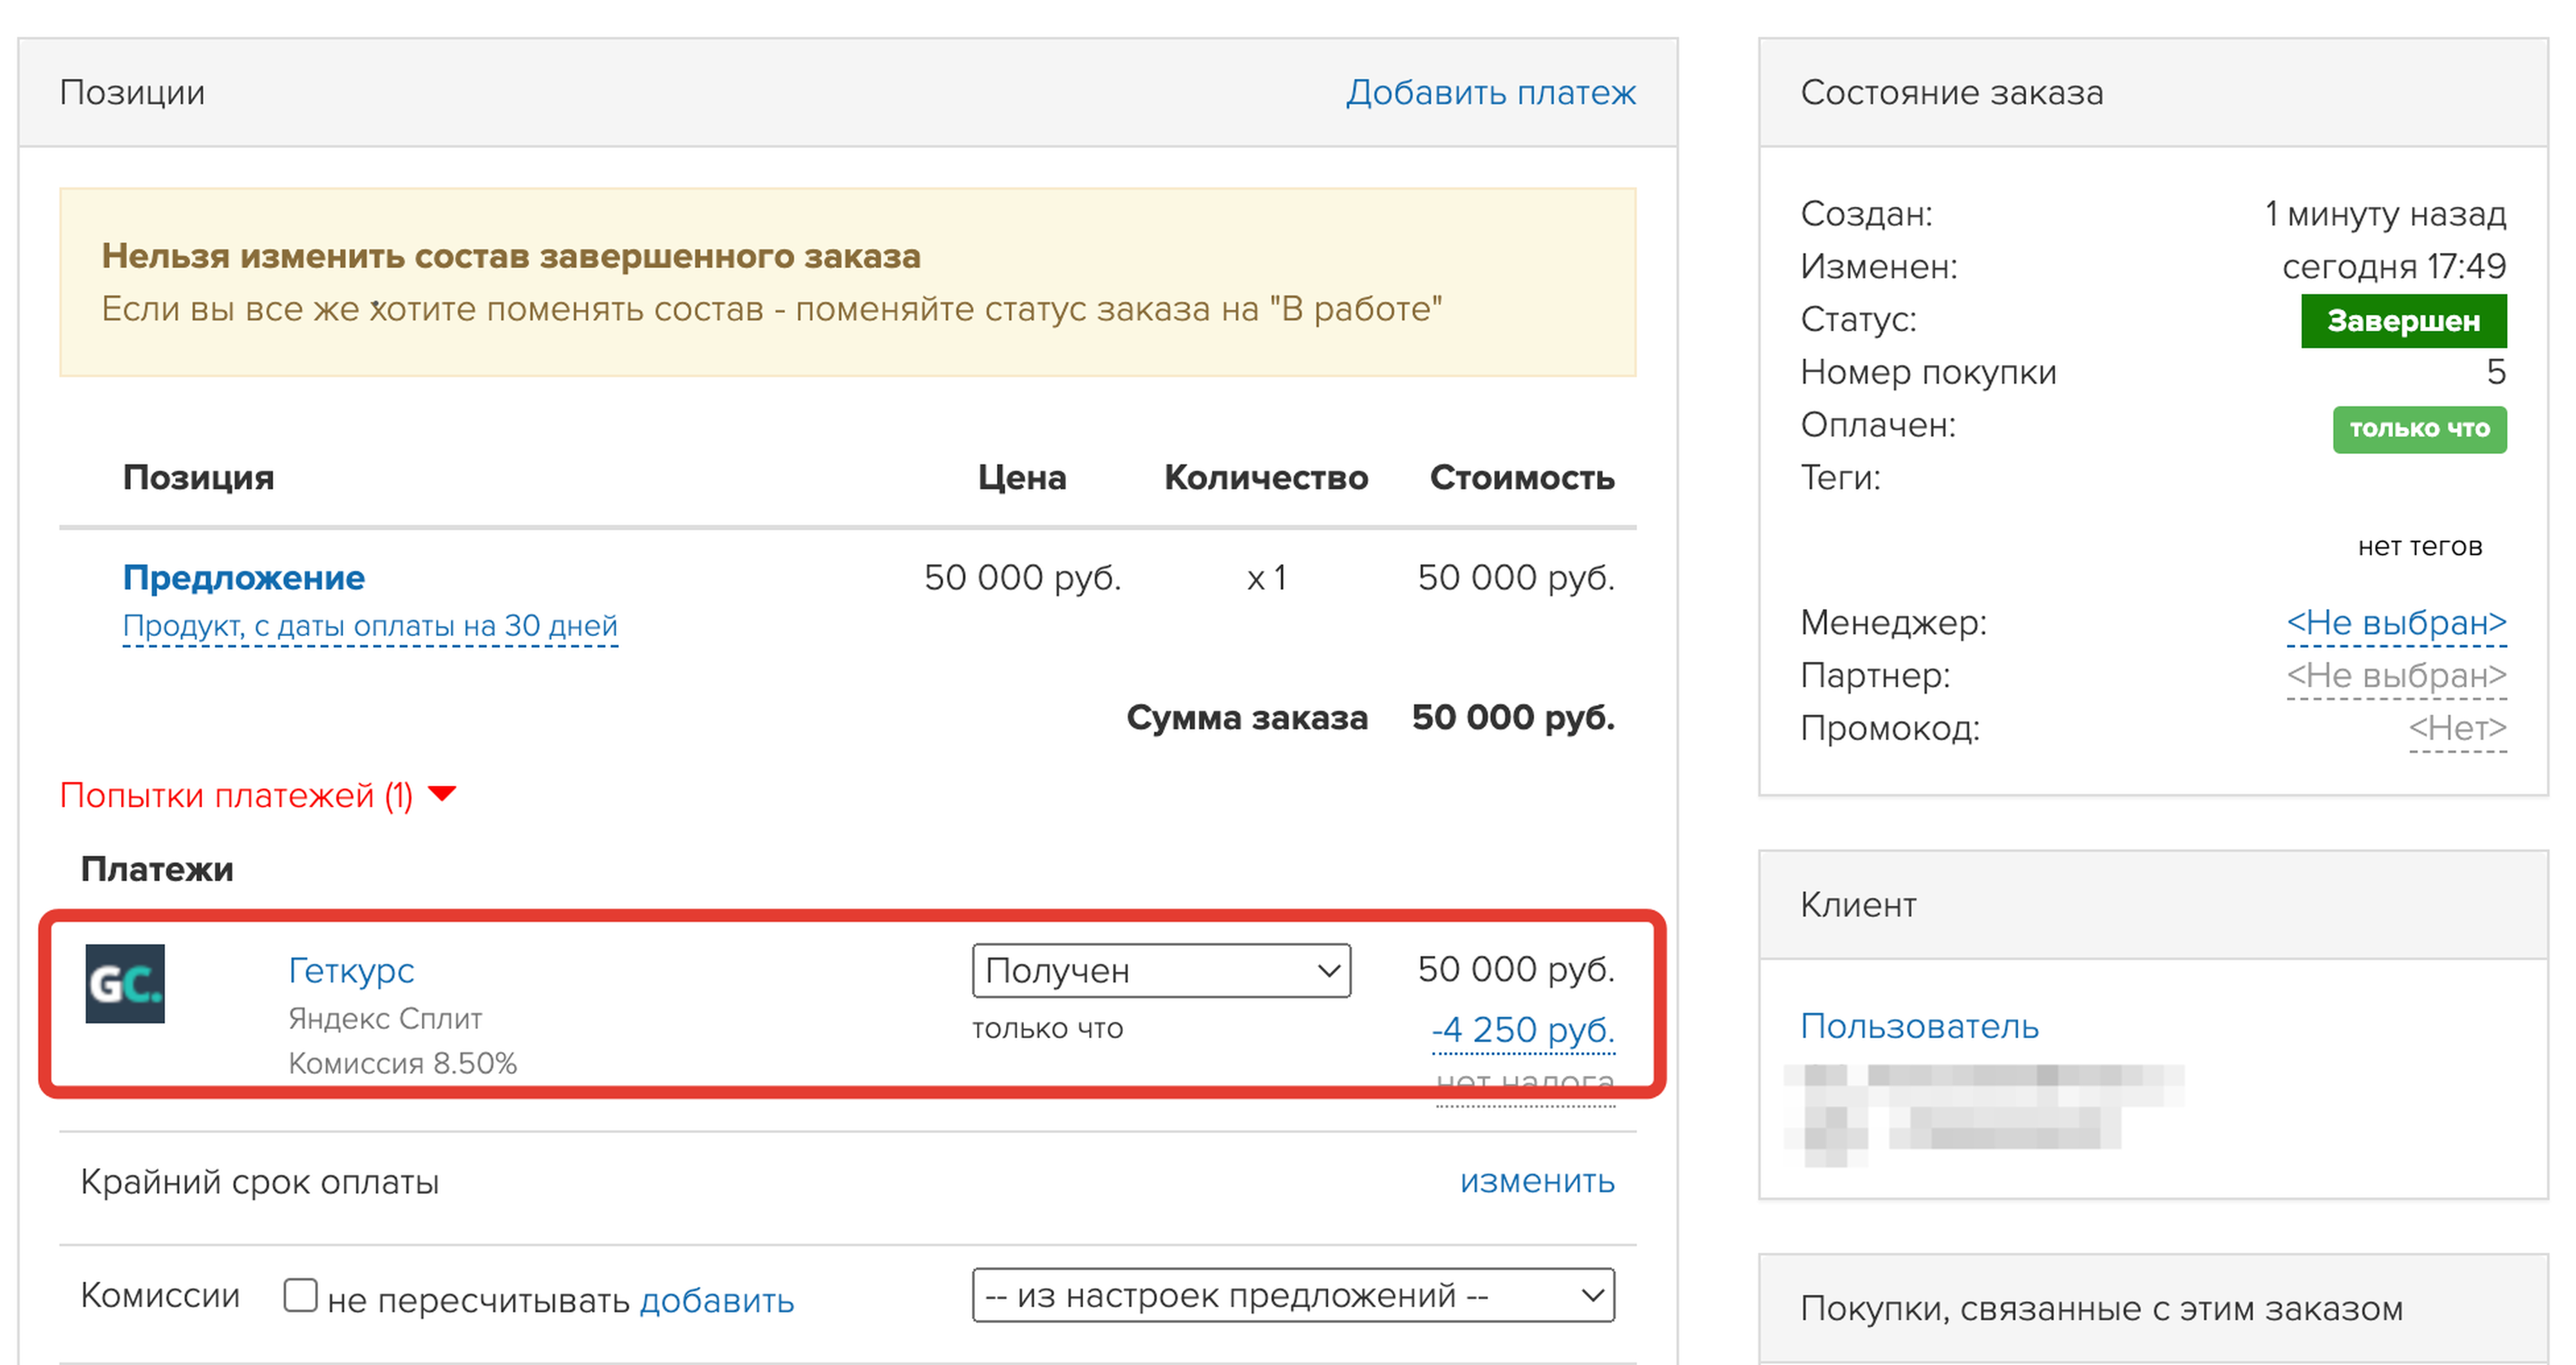 Заказ оплачен с Яндекс Сплит